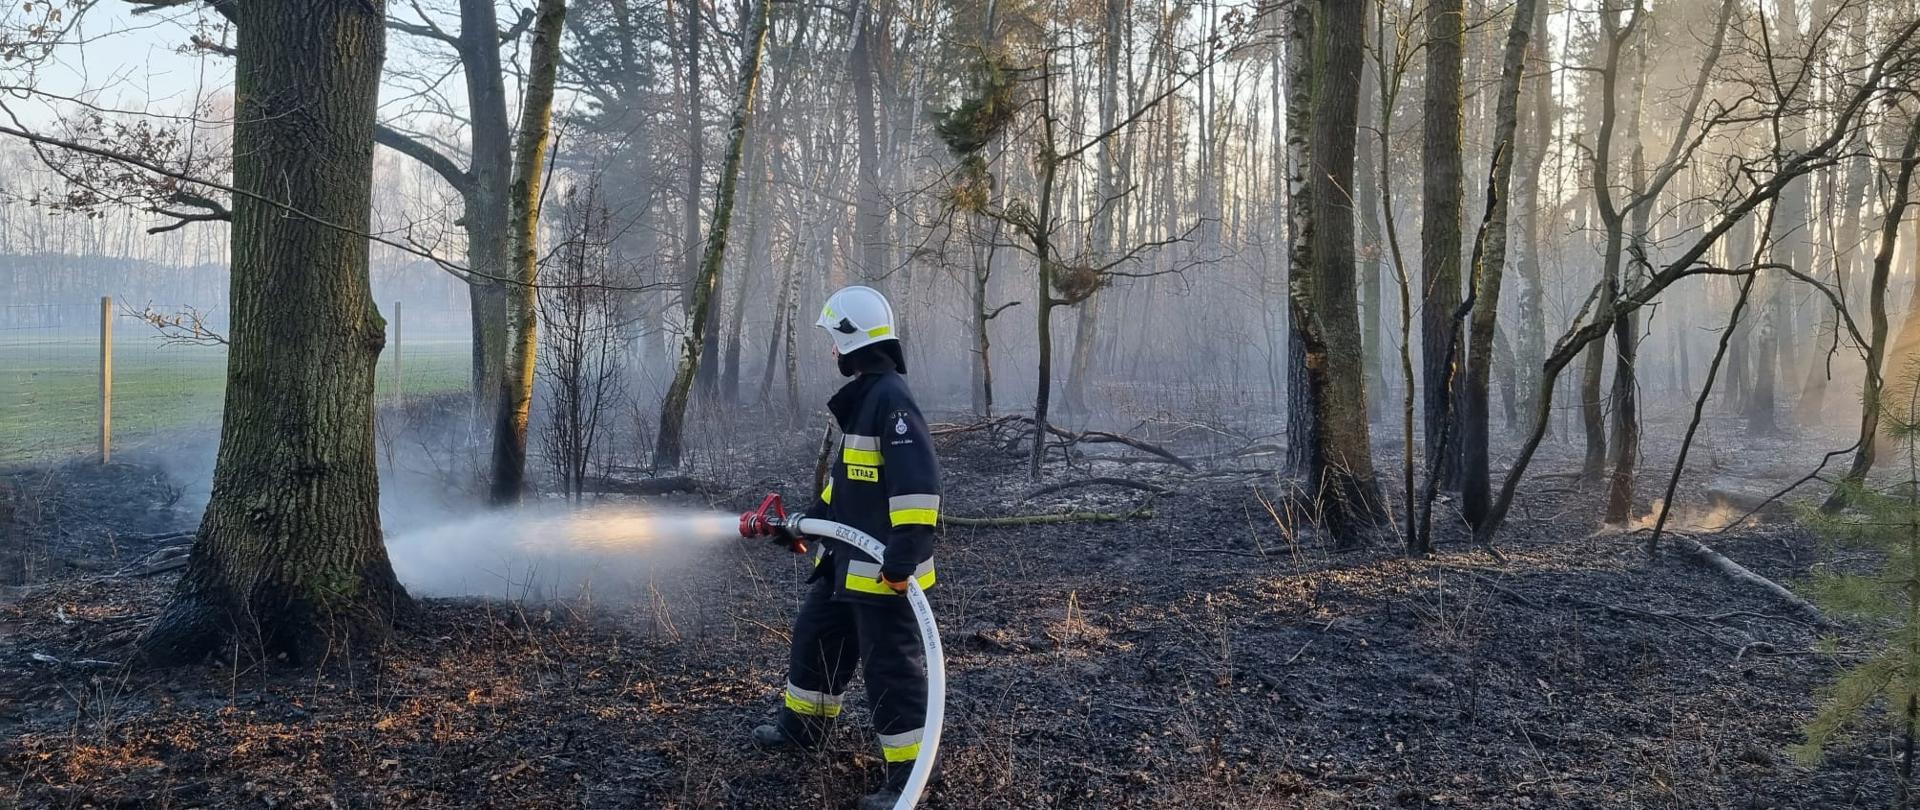 Zdjęcie przedstawia pożar poszycia leśnego w miejscowości Kuźnica Myślniewska. Na zdjęciu widzimy strażaka ochotnika podczas dogaszania poszycia leśnego. Zdjęcie wykonane w porze dziennej w obrębie lasu.